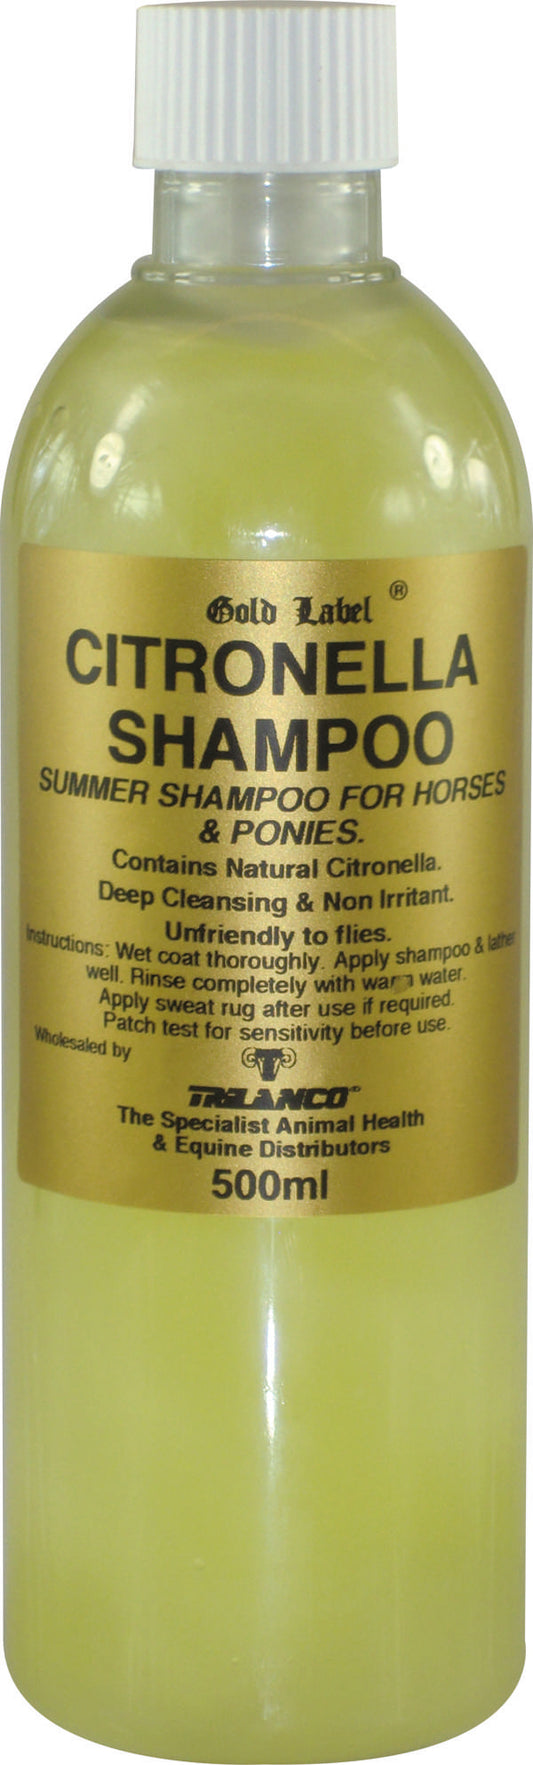 Gold Label Citronella Shampoo 500ml